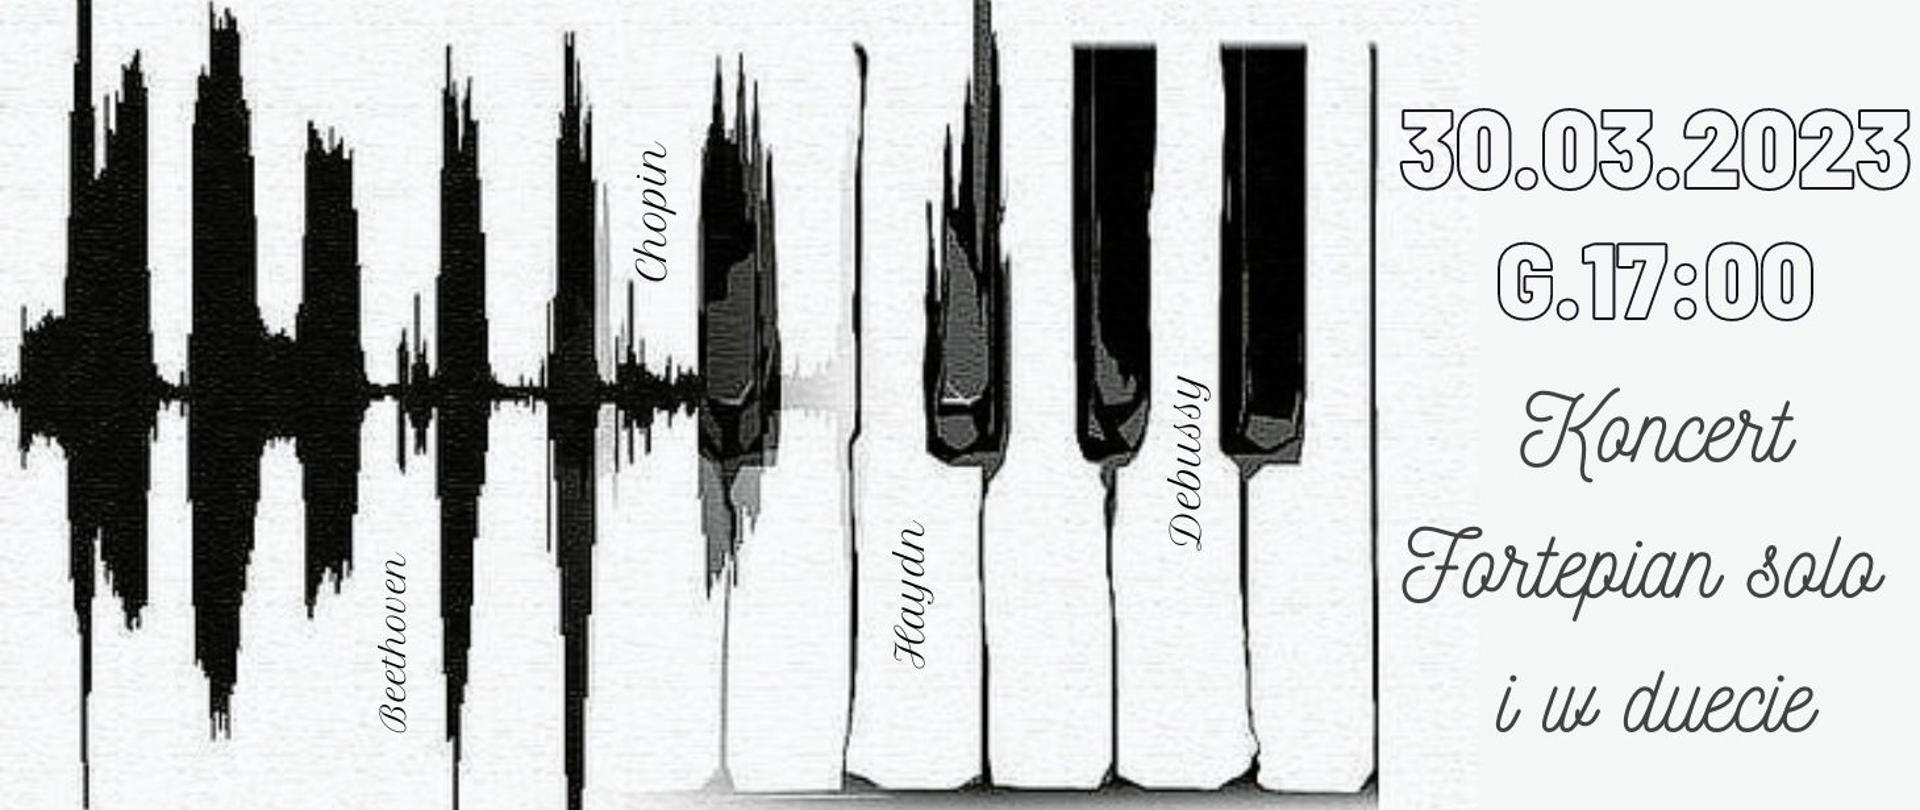 panorama informująca o koncercie fortepianowym w dniu 30.03.2023 o godz.17:00. W pierwszym planie rysunek klawiatury fortepianu. Grafika utrzymana w szaro - czarnych barwach. 